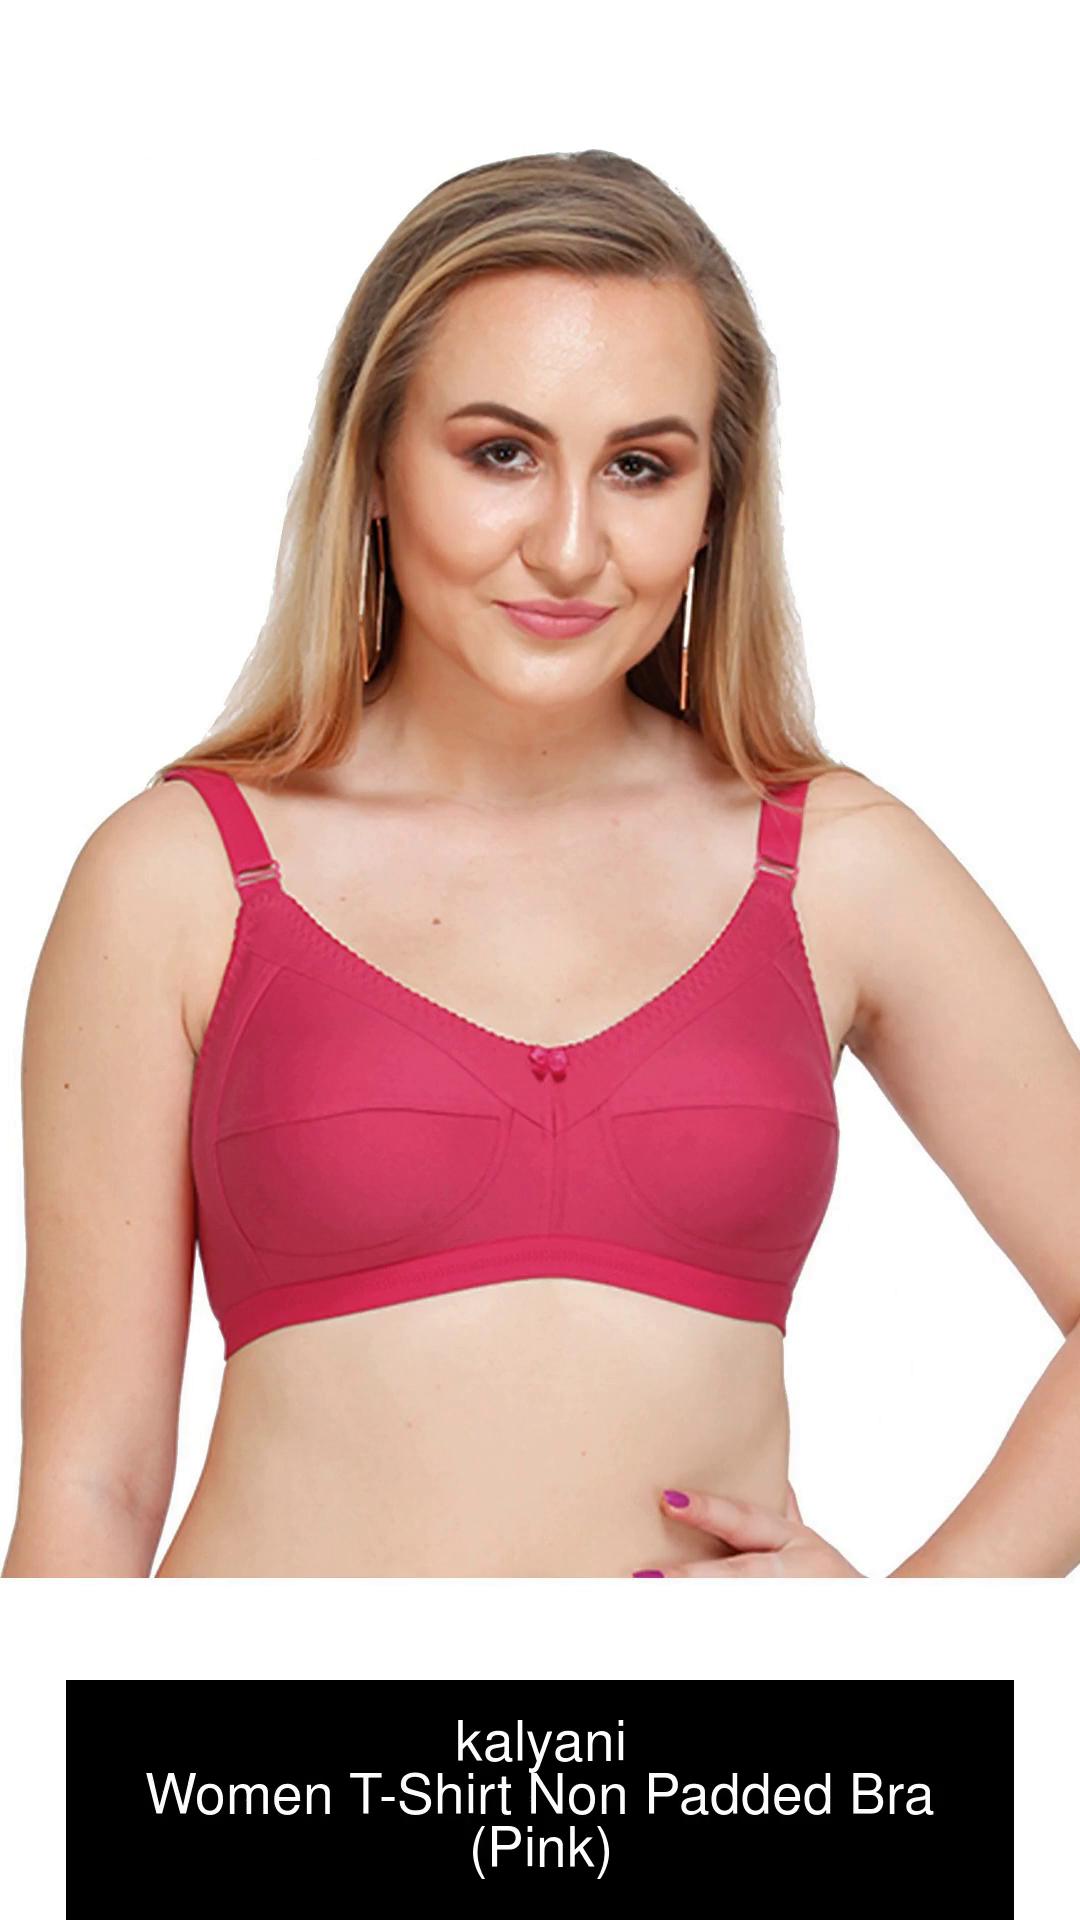 Buy Kalyani Non Padded Cotton T Shirt Bra - Pink Online at Low